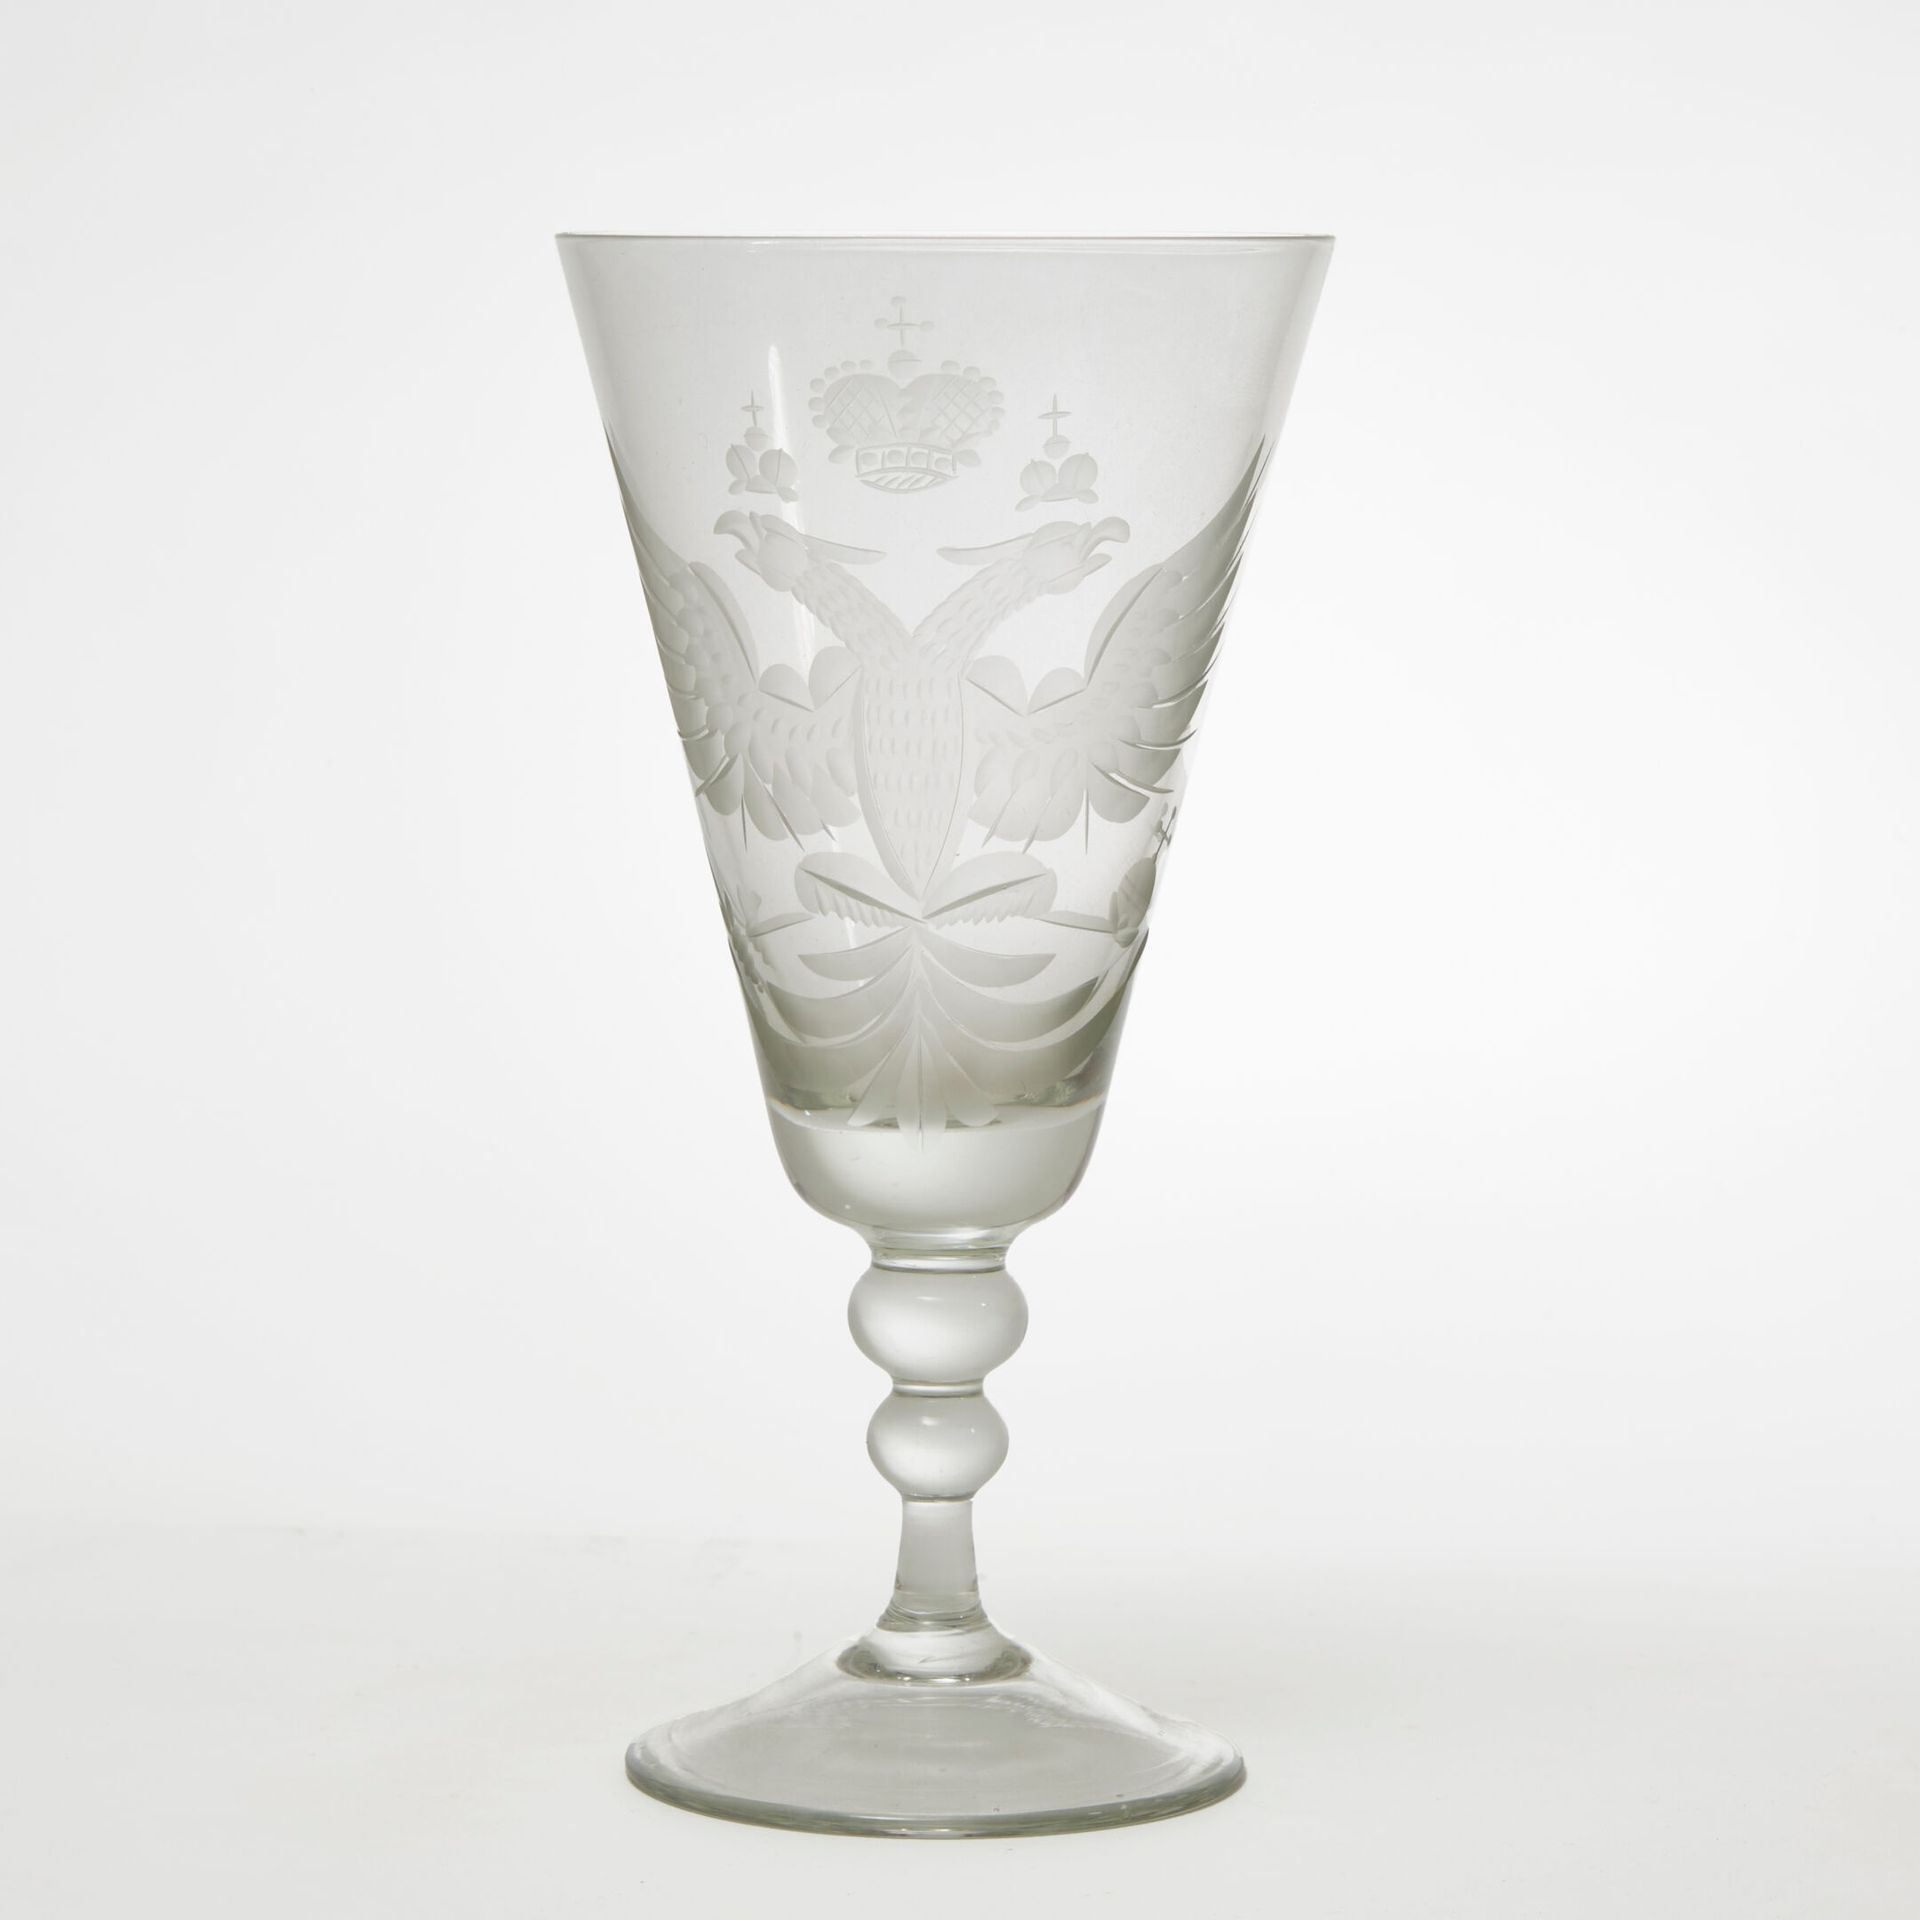 TRAVAIL MODERNE MODERNE ARBEIT
Modernes Glas im Geschmack des 18. Jahrhunderts m&hellip;